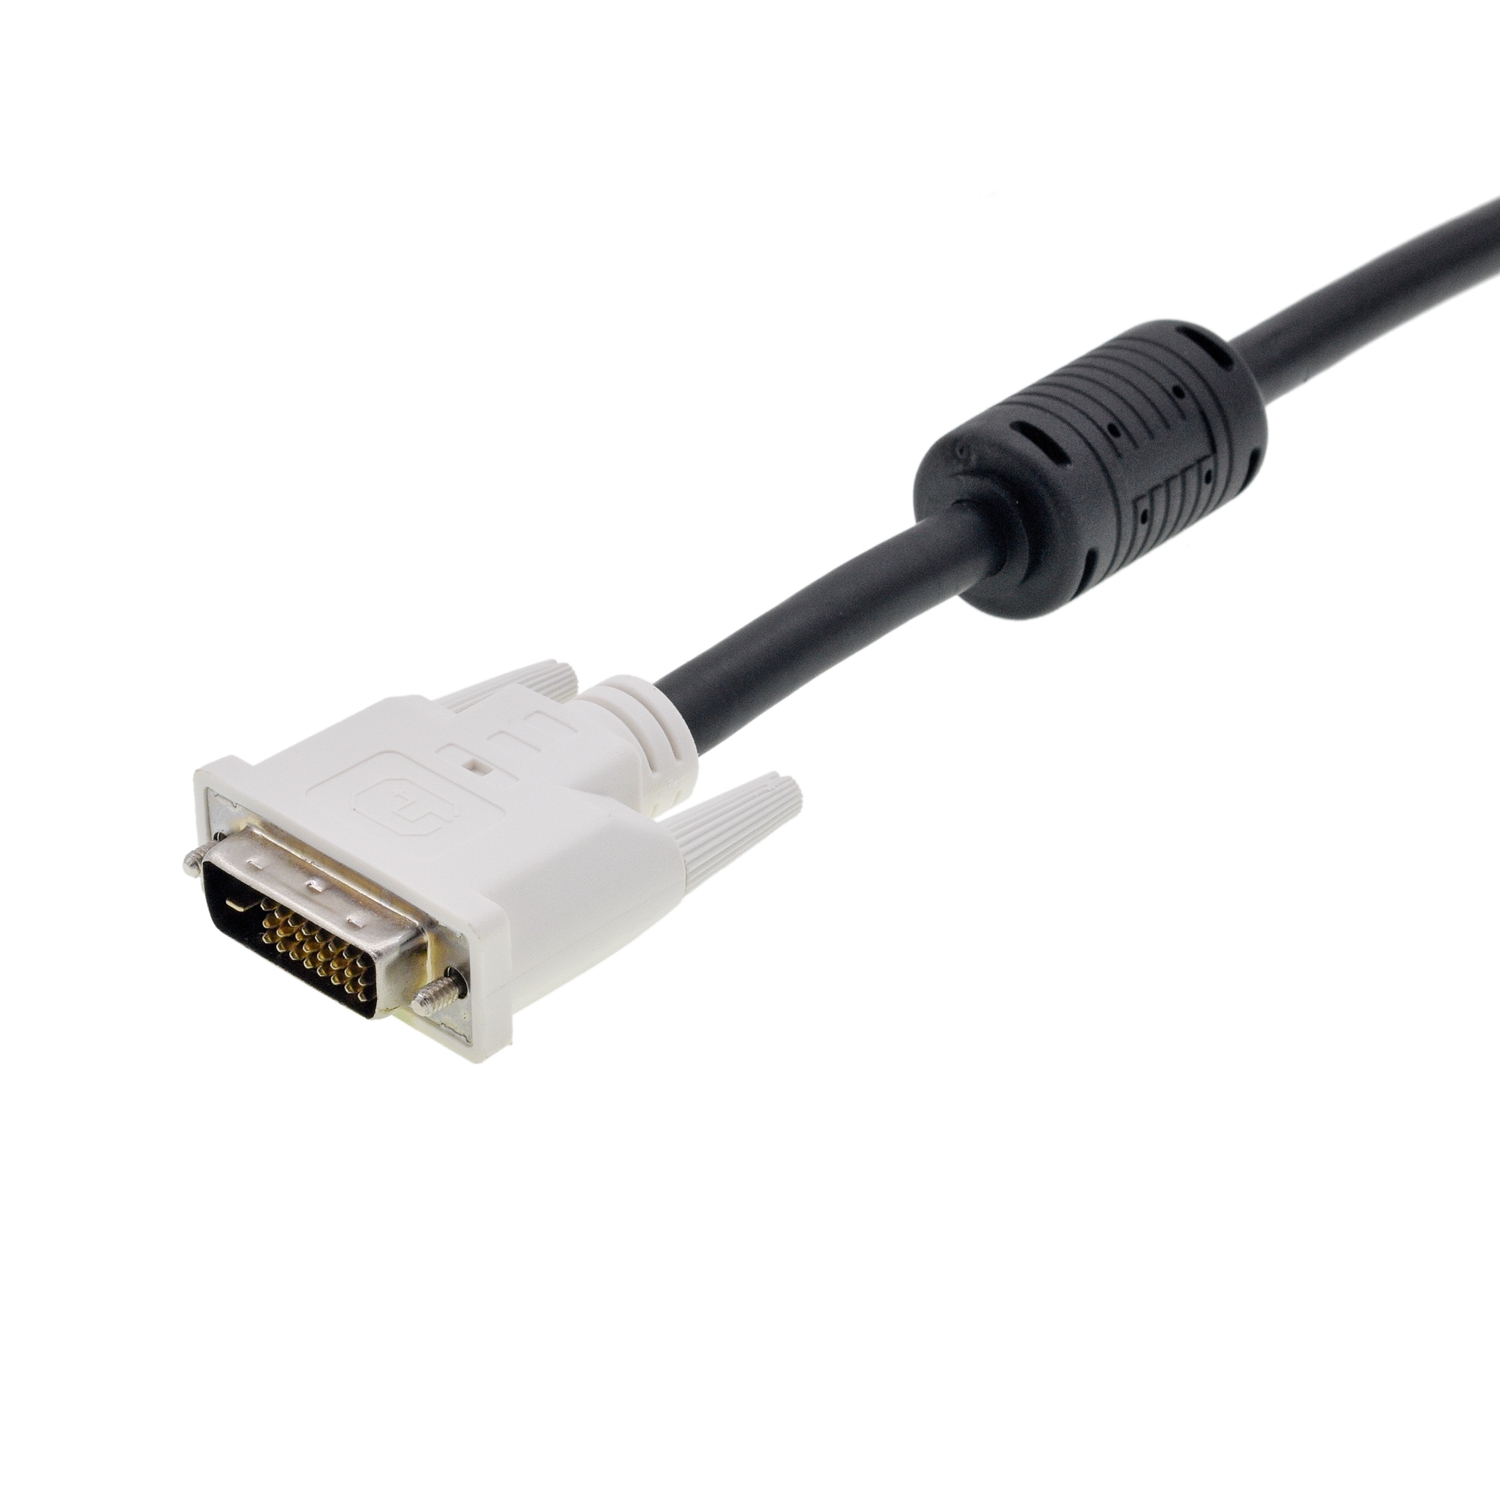 Cable A / V del cable del monitor del adaptador de HDMI a VGA para el OEM de la HDTV de la PC